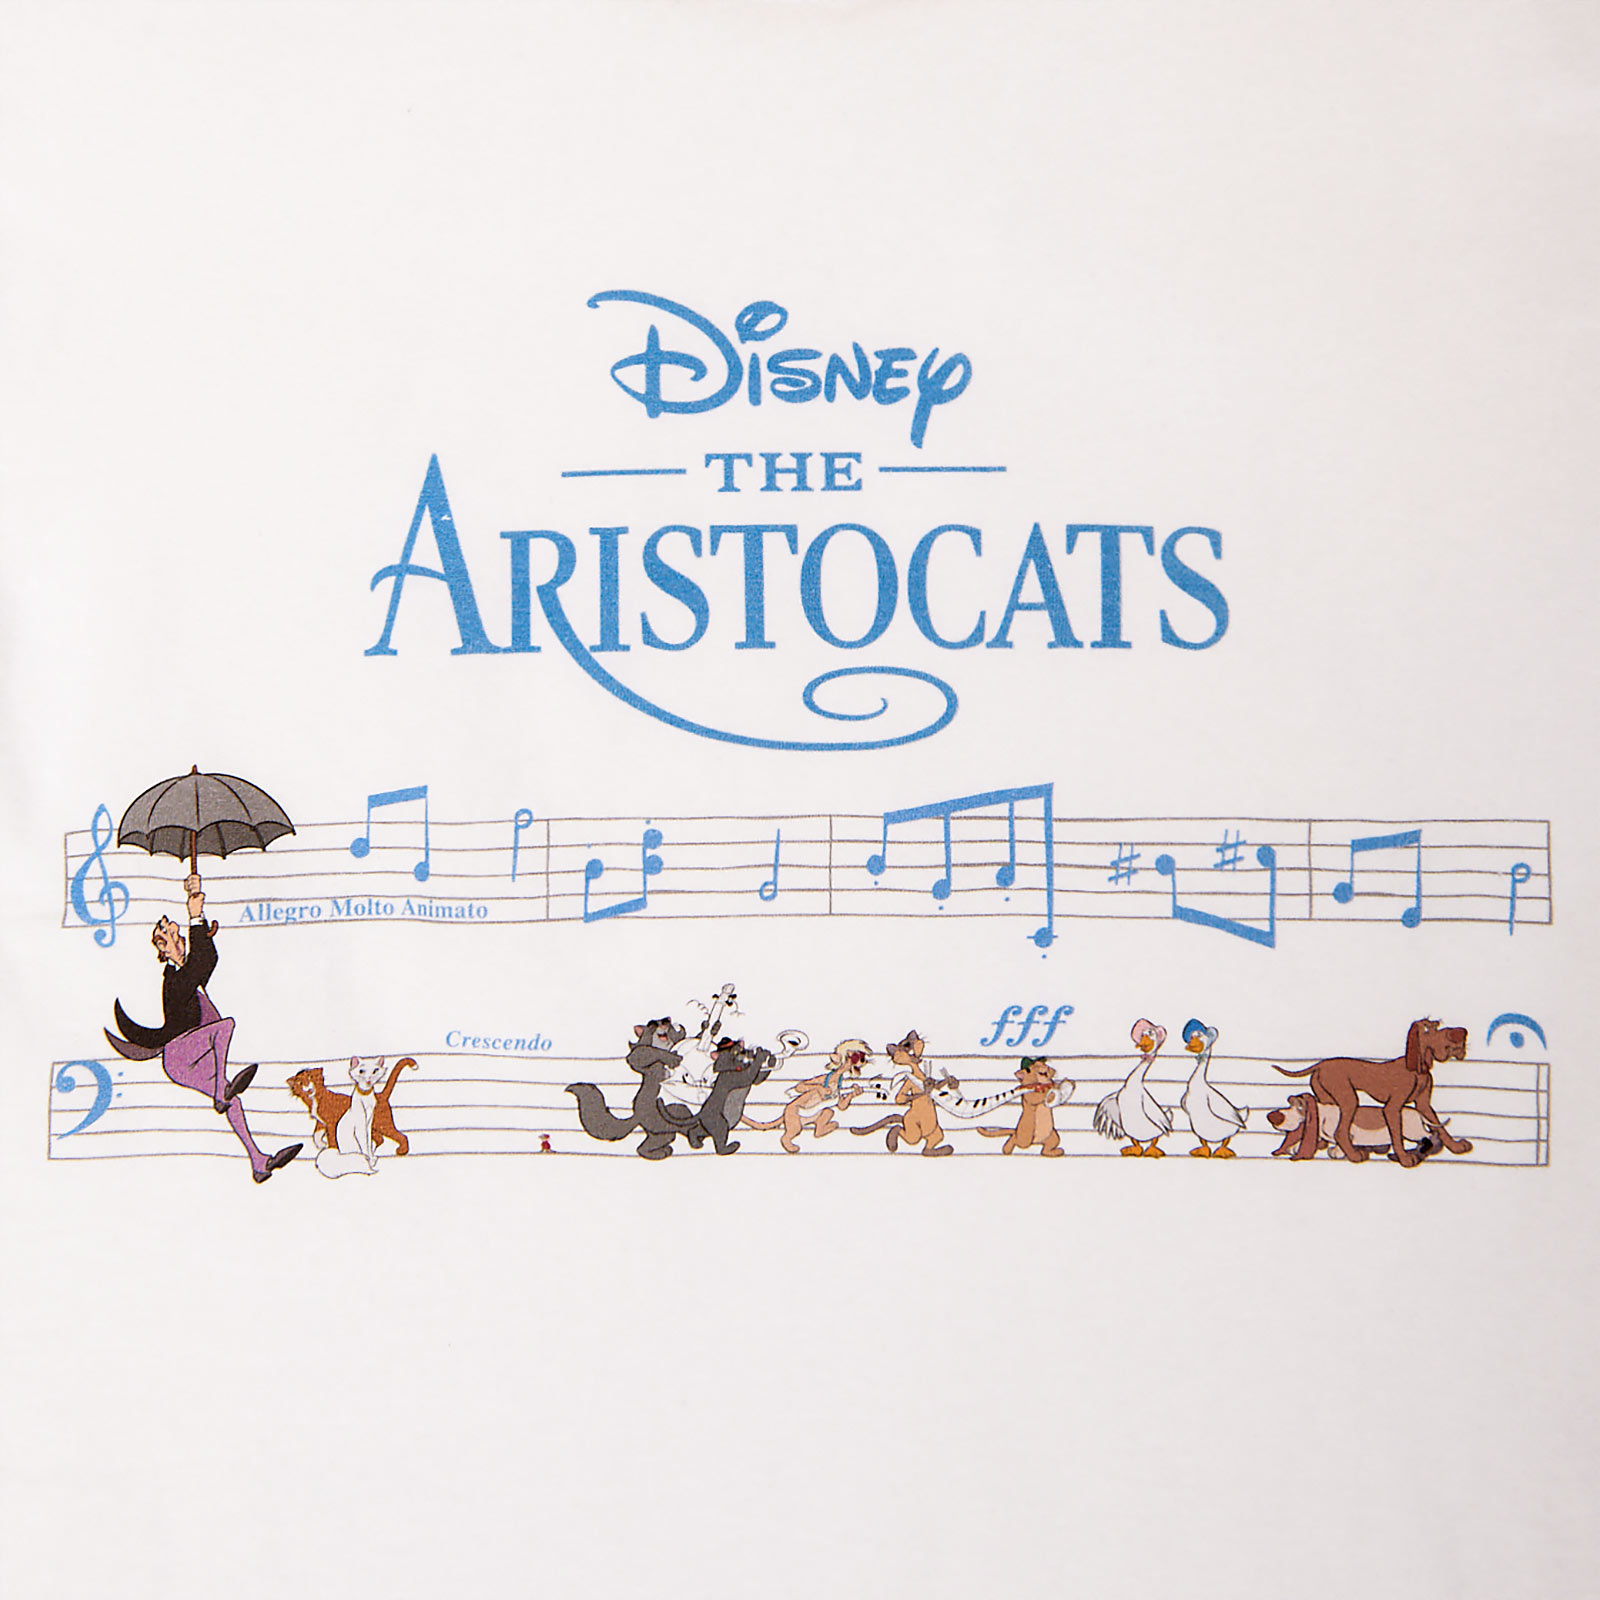 Aristocats - Music T-Shirt Damen weiß